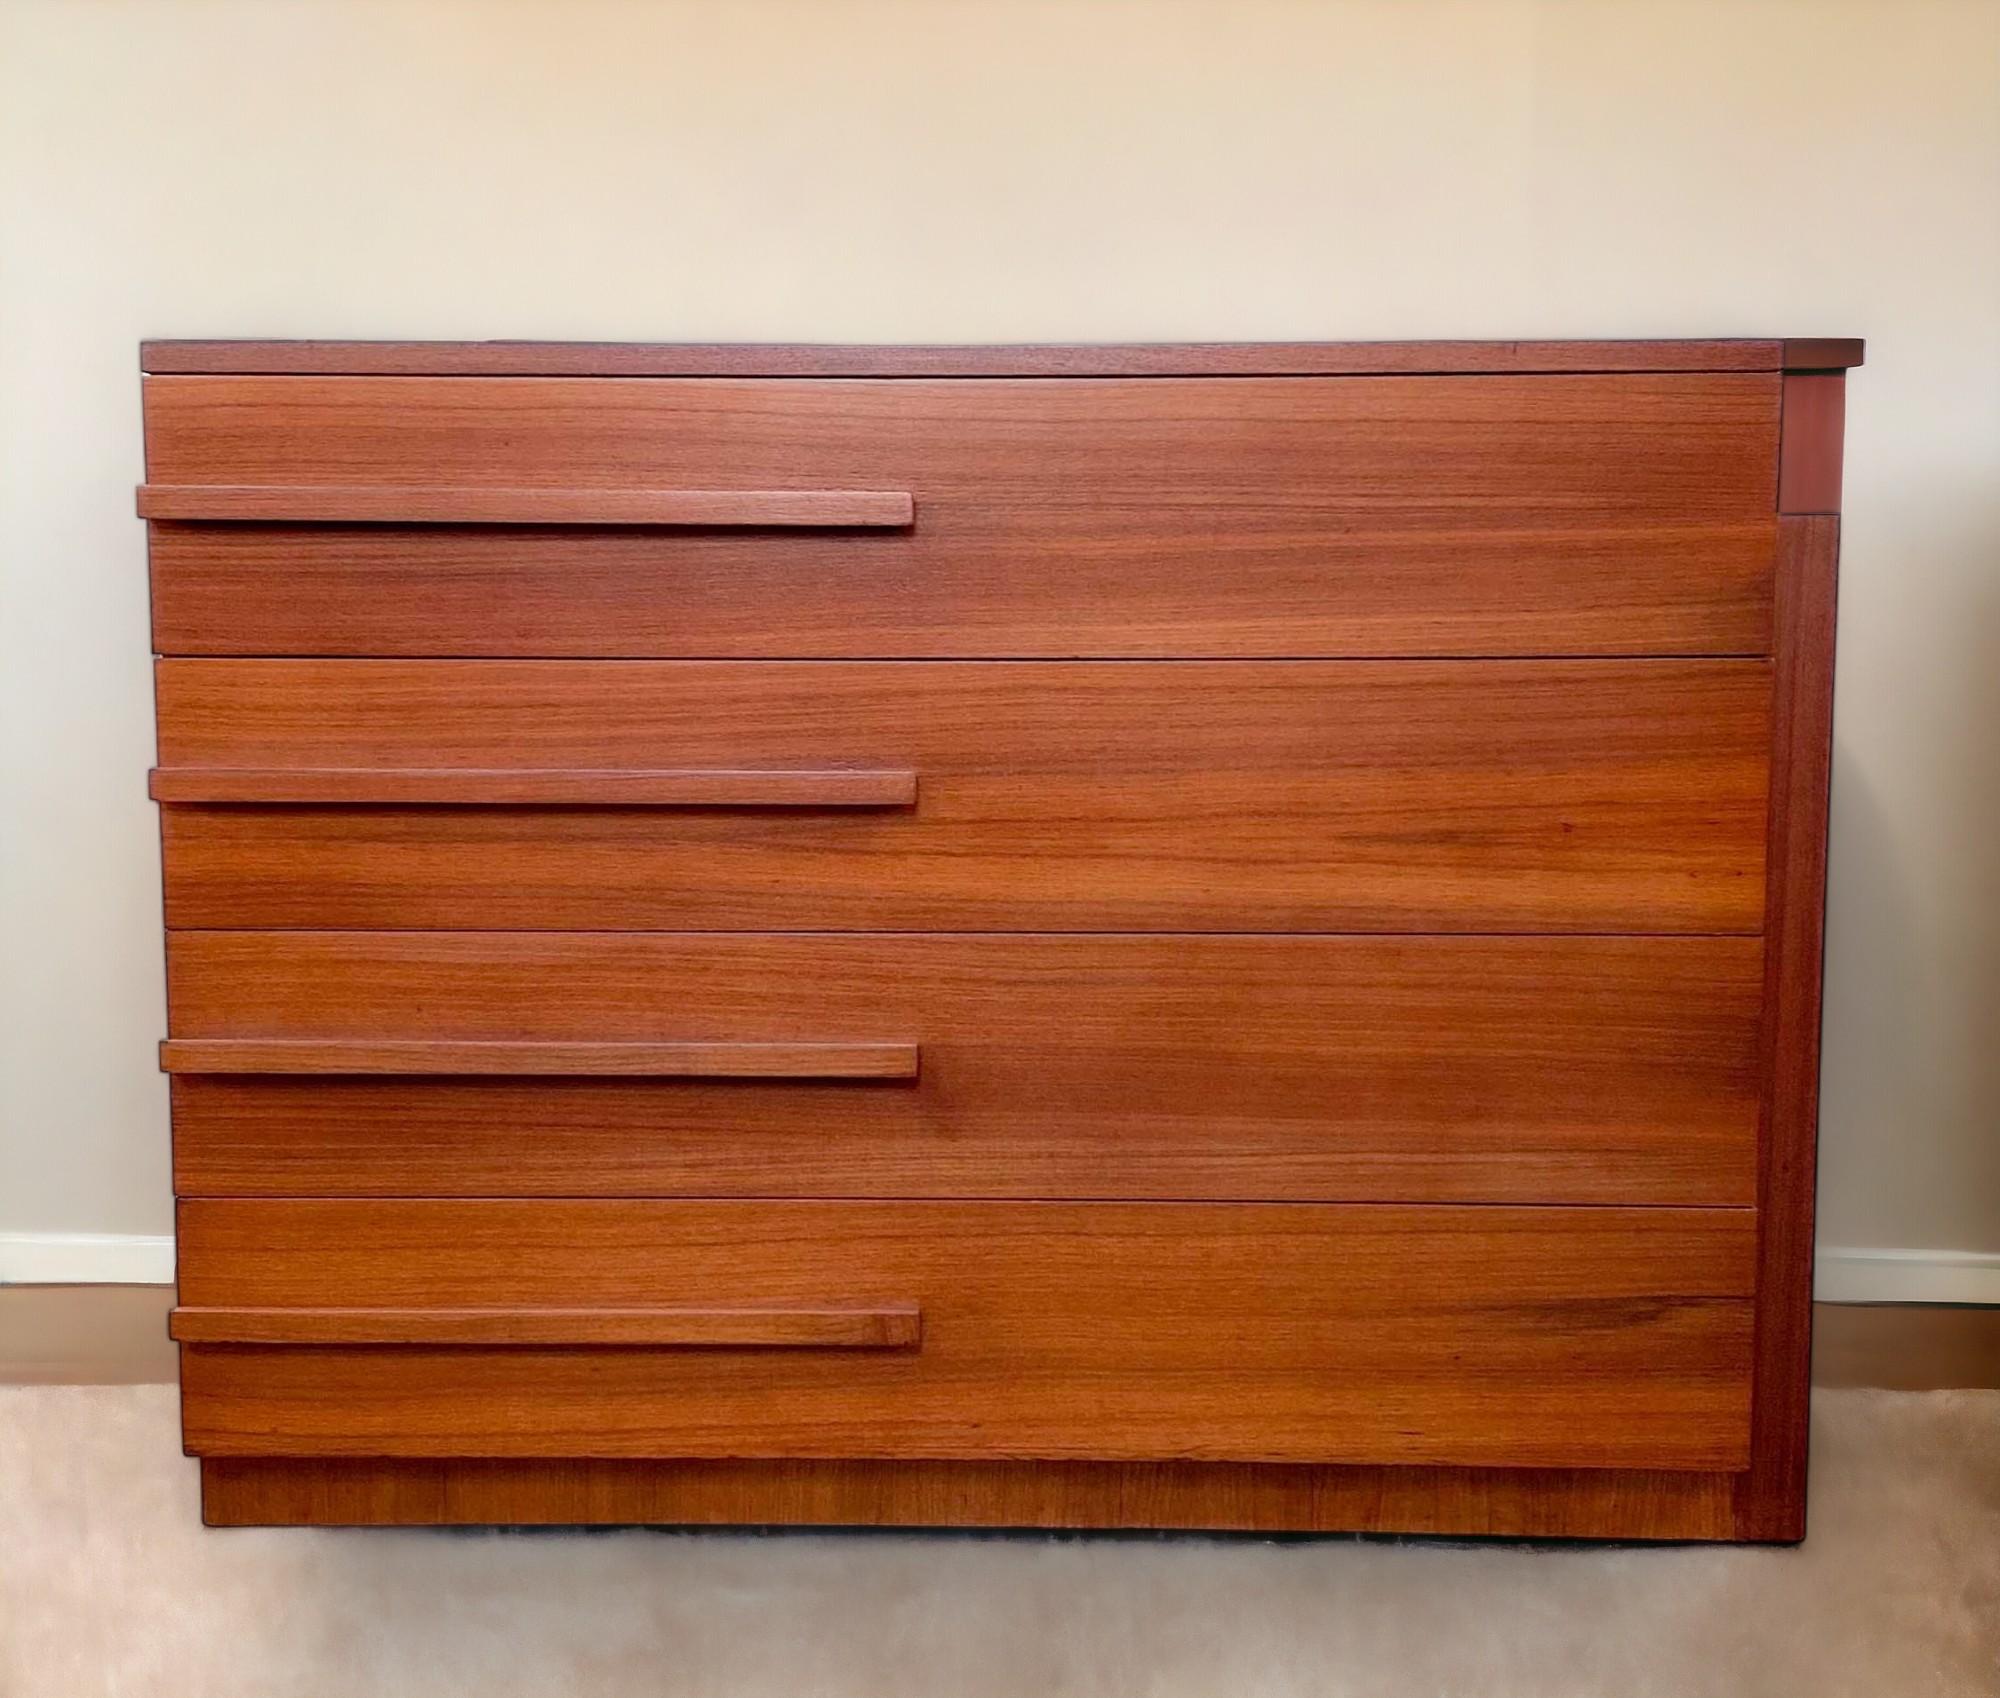 Commode Streamline à quatre tiroirs en acajou de la Modernage Furniture Company de New York, datant des années 1930. 
Le socle en retrait se poursuit sous la forme d'un panneau surélevé le long du côté droit du meuble et se termine à mi-chemin sur